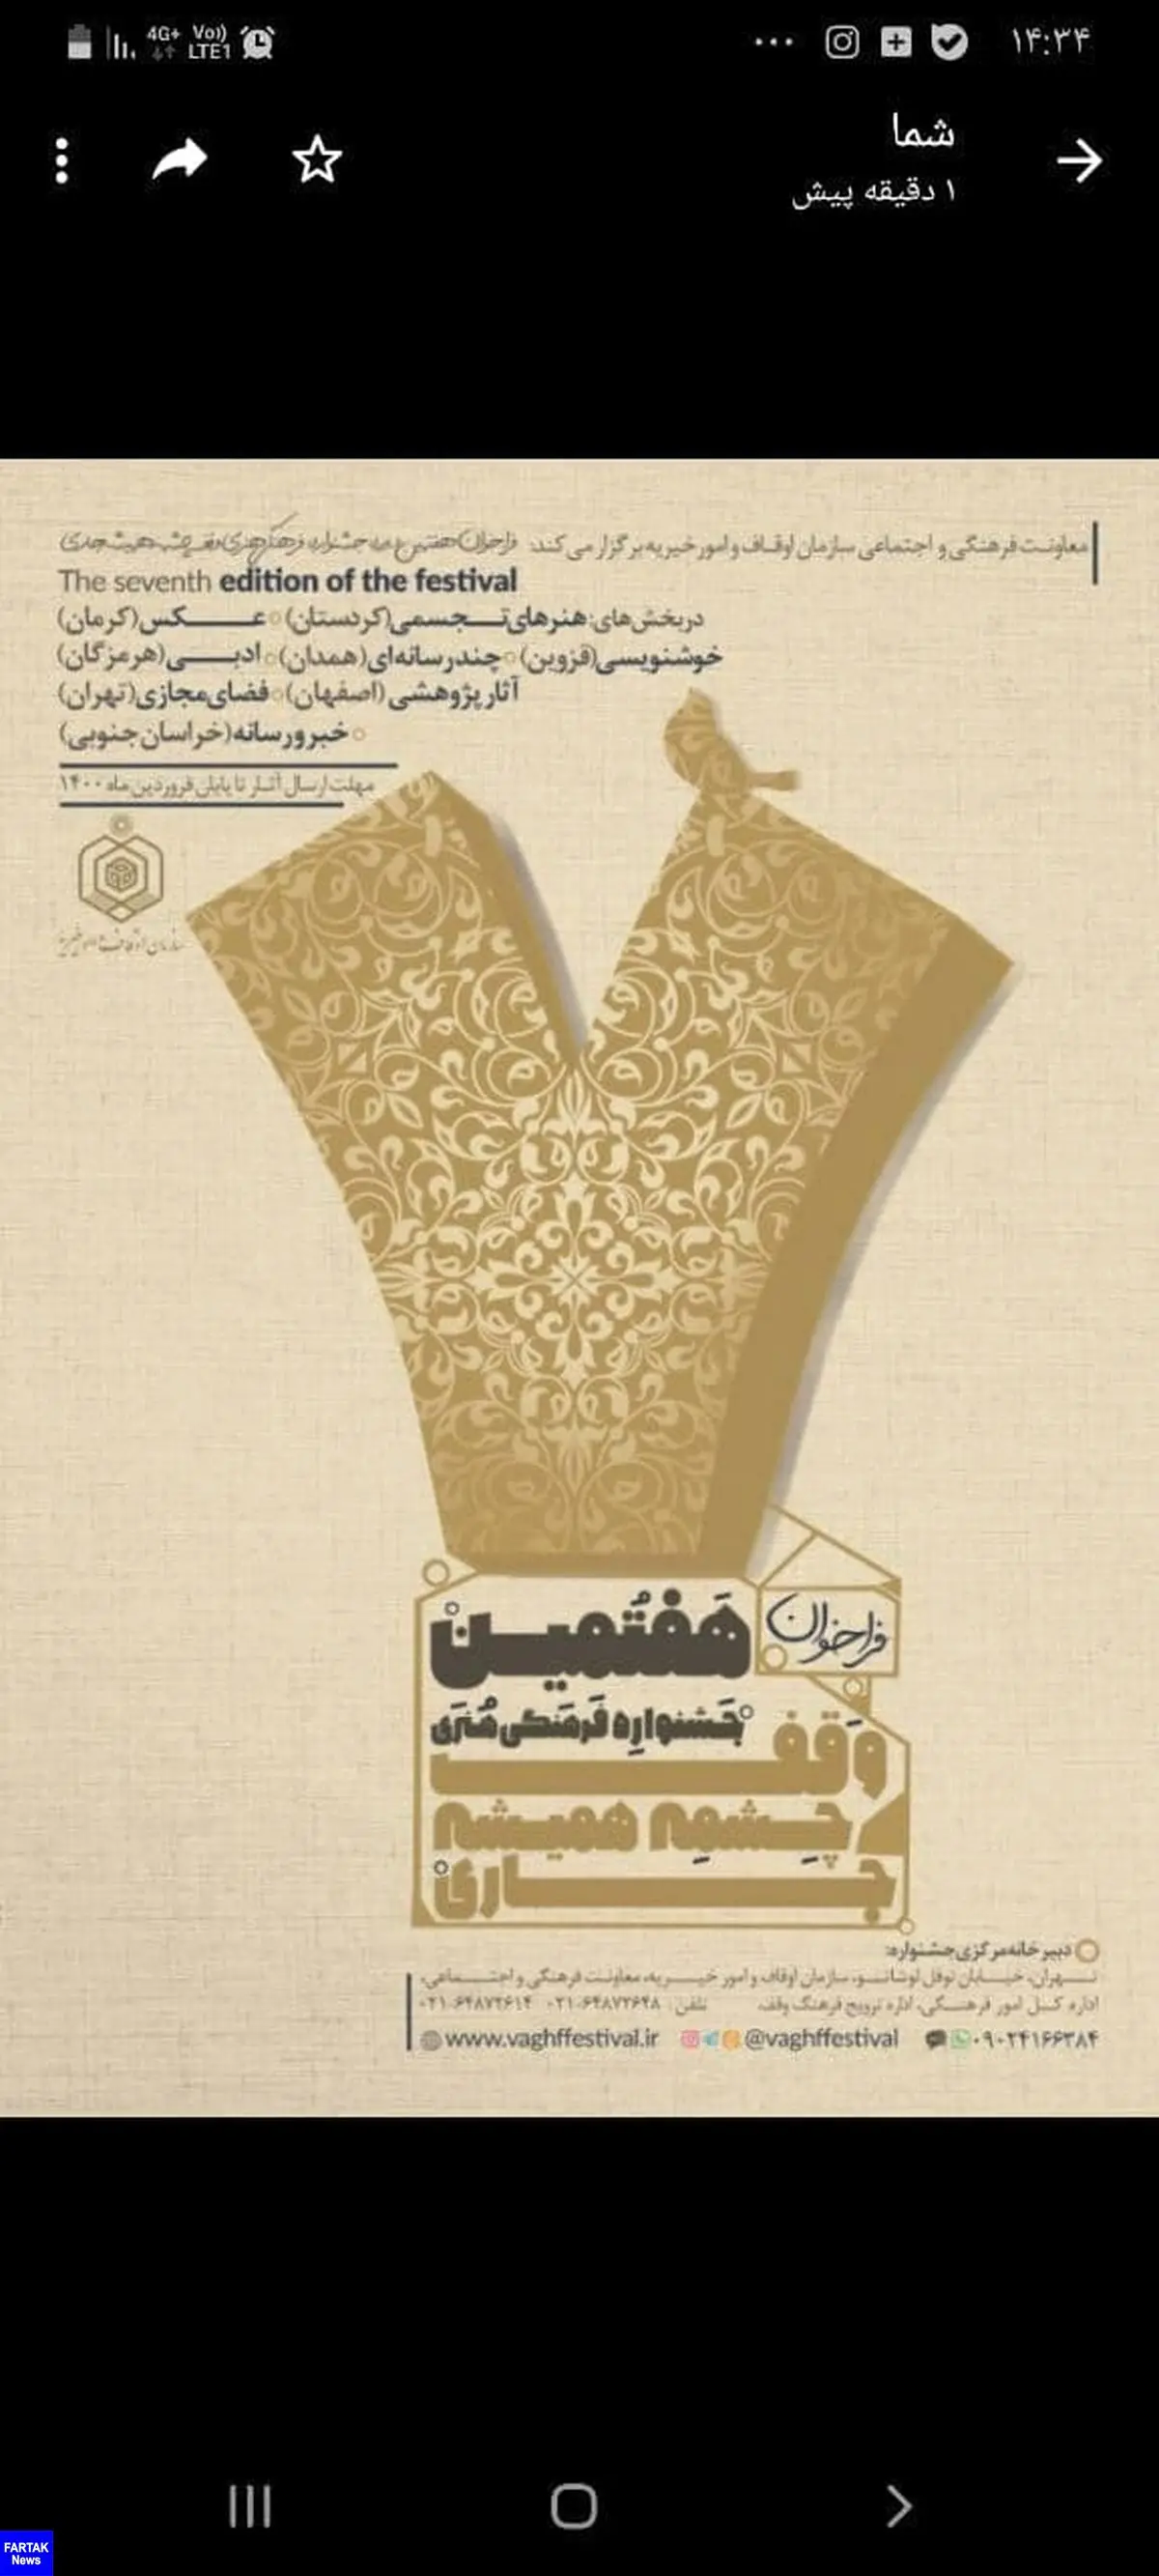 رونمایی از پوستر هفتمین جشنواره فرهنگی و هنری "وقف چشمه همیشه جاری"